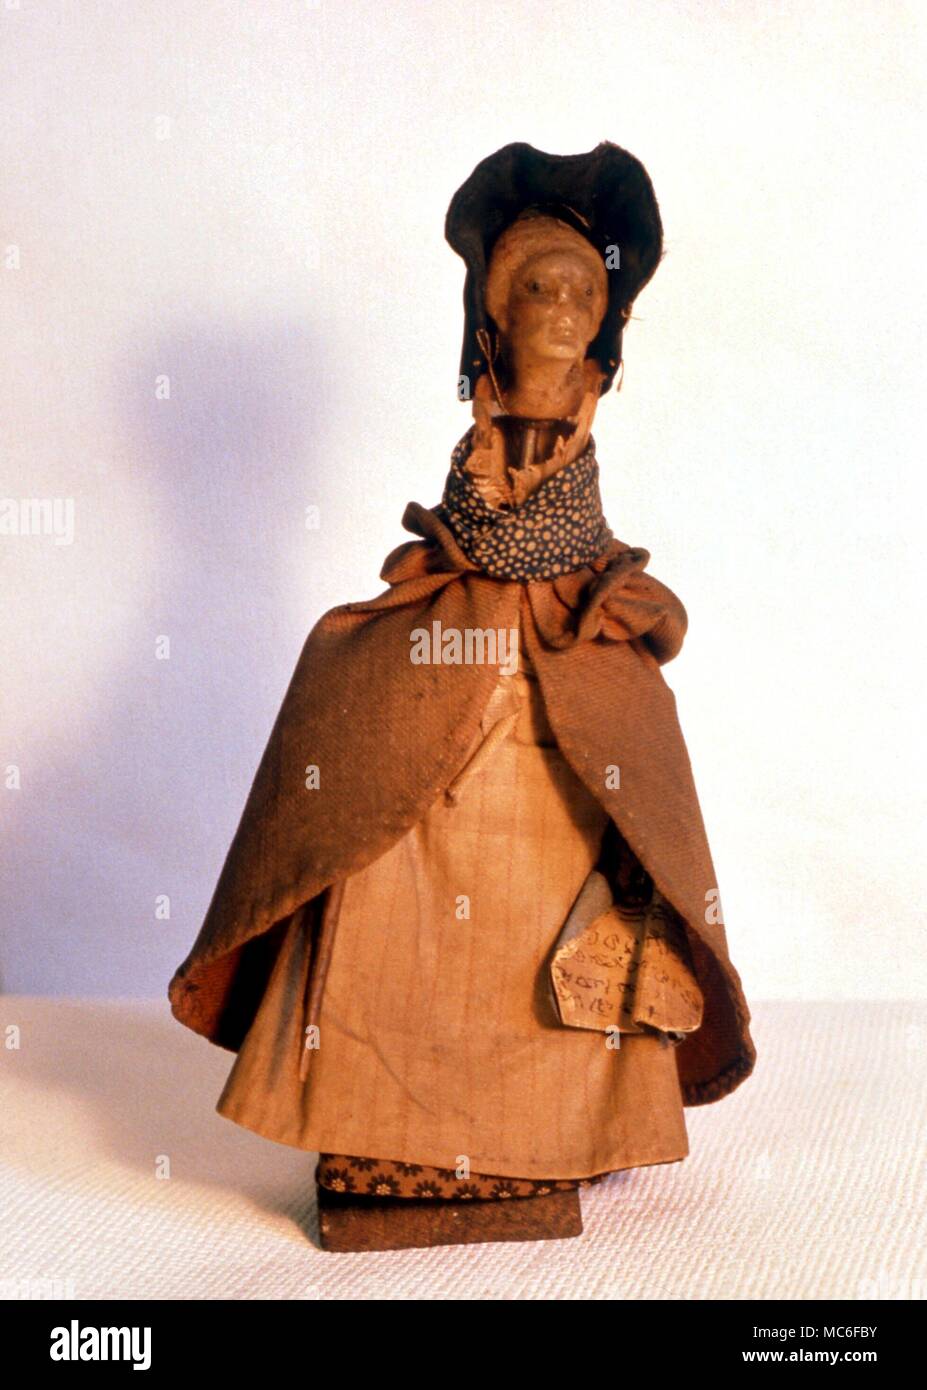 La sorcellerie - une poupée de sorcellerie, ou le pointeau, utilisé par les  sorcières, qui serait le nom de la poupée (souvent par l'insertion d'un nom  écrit dans la robe) puis mutiler,